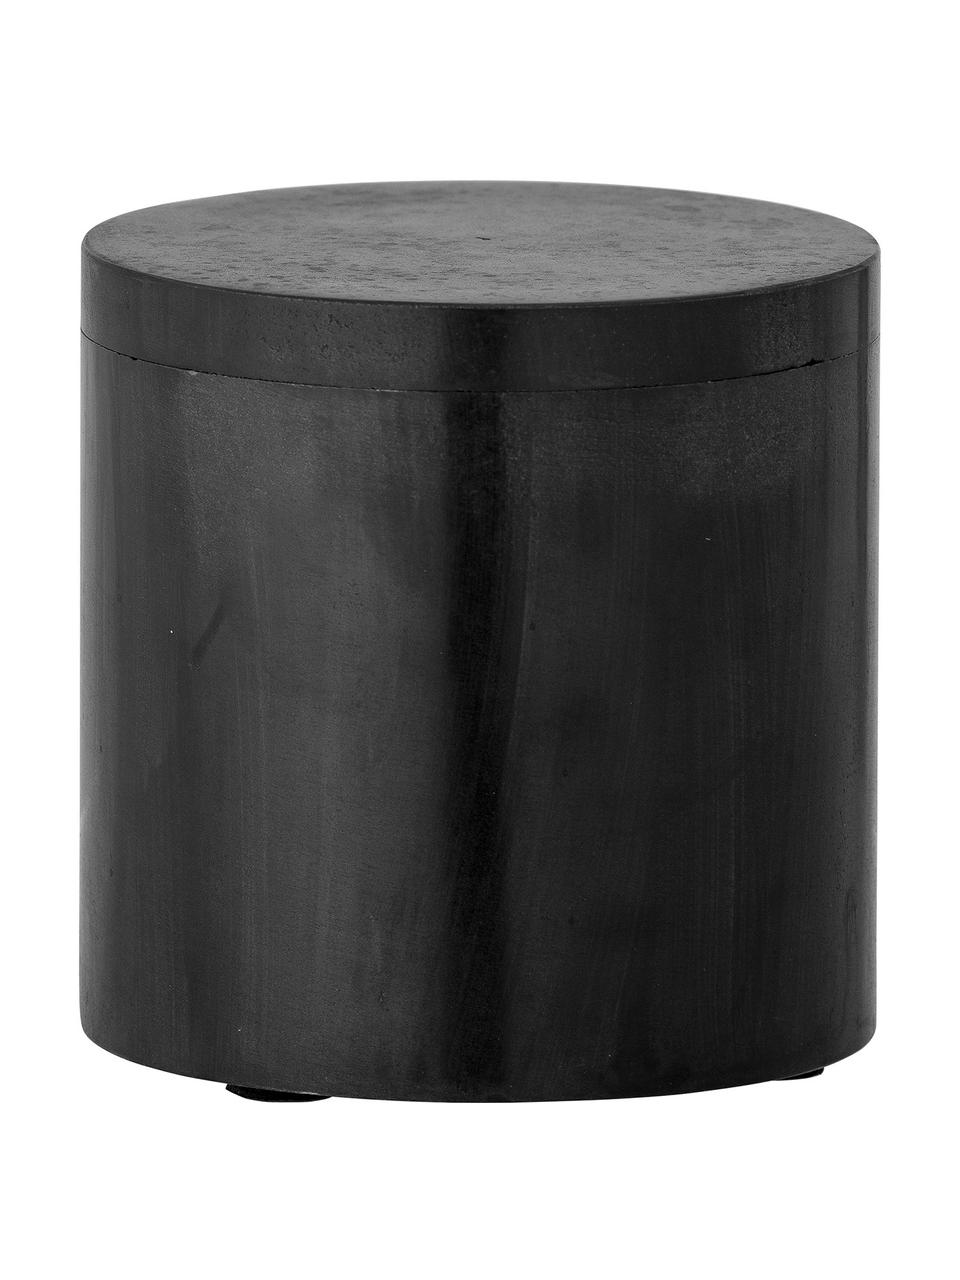 Malá škatuľka na bižutériu Minori, Skala vápencová, Čierna, Ø 10 x V 10 cm